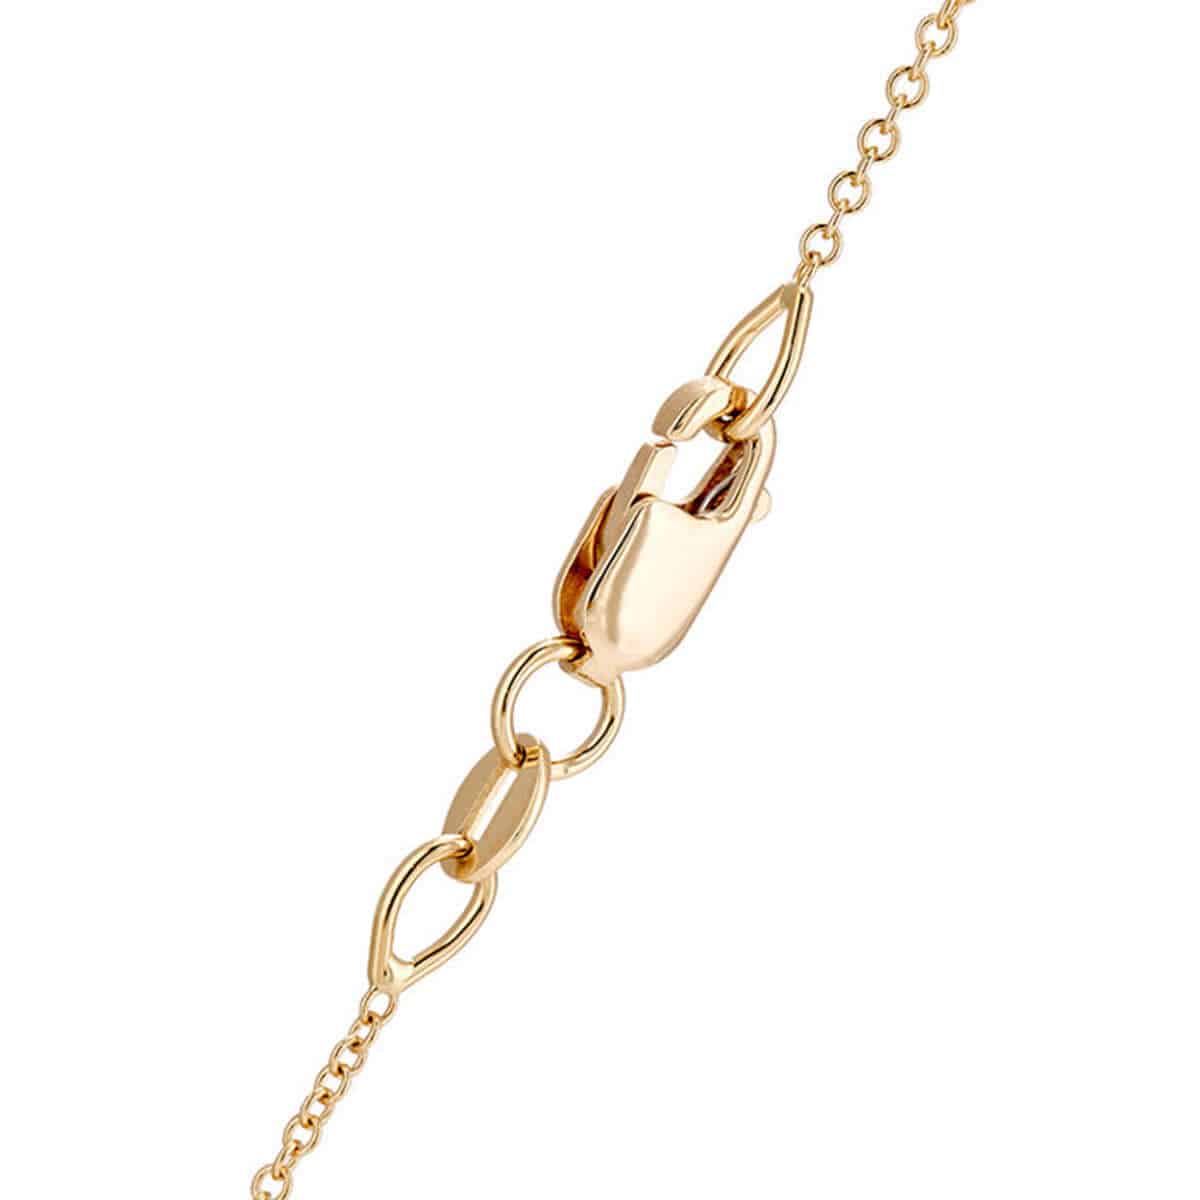 Baguette Single Drop Necklace Y-D - Baguette - Ileana Makri store